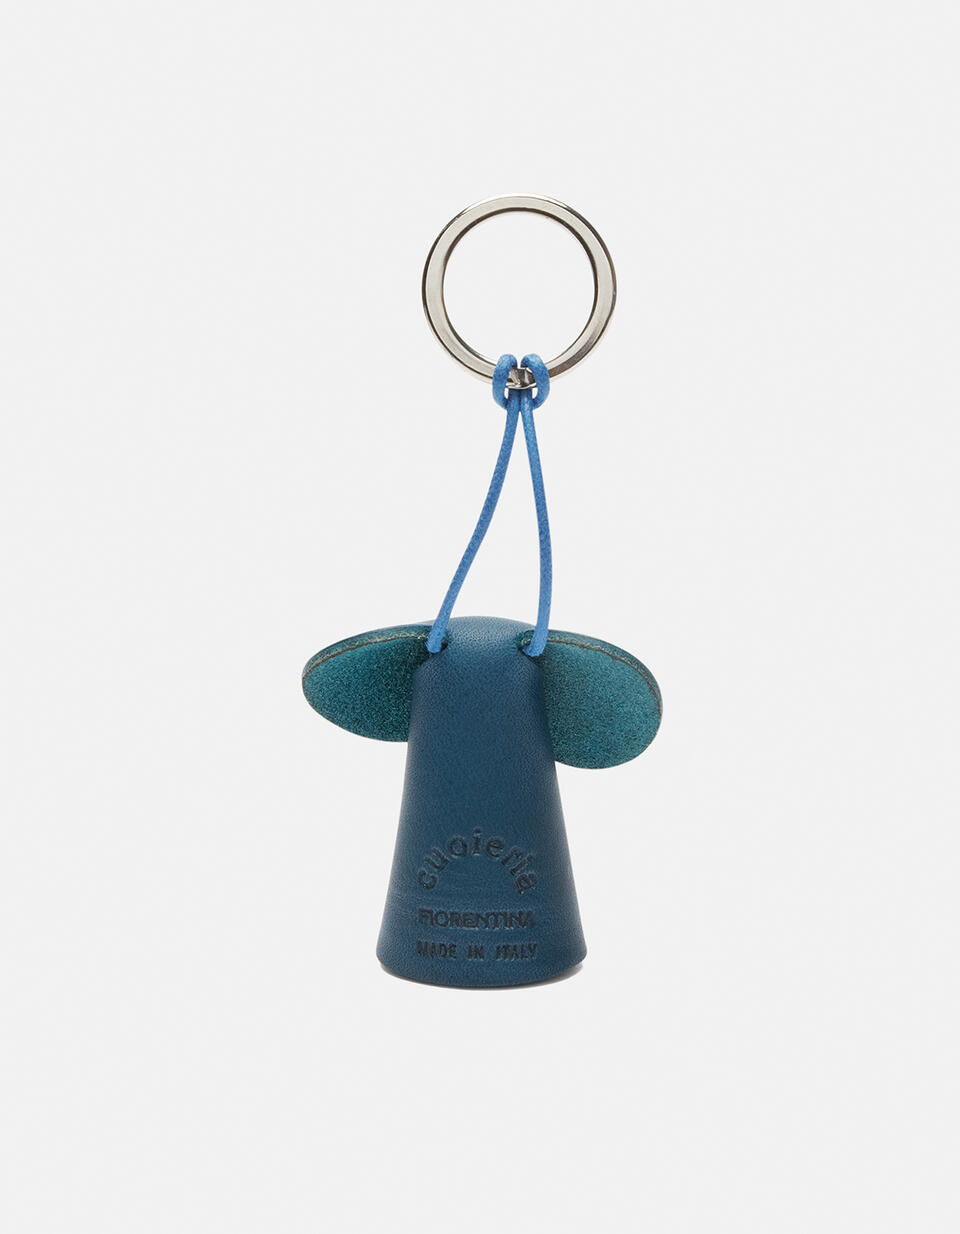 Portachiavi ad anello in cuoio colorato Blu  - Portachiavi Donna - Accessori Donna - Accessori - Cuoieria Fiorentina